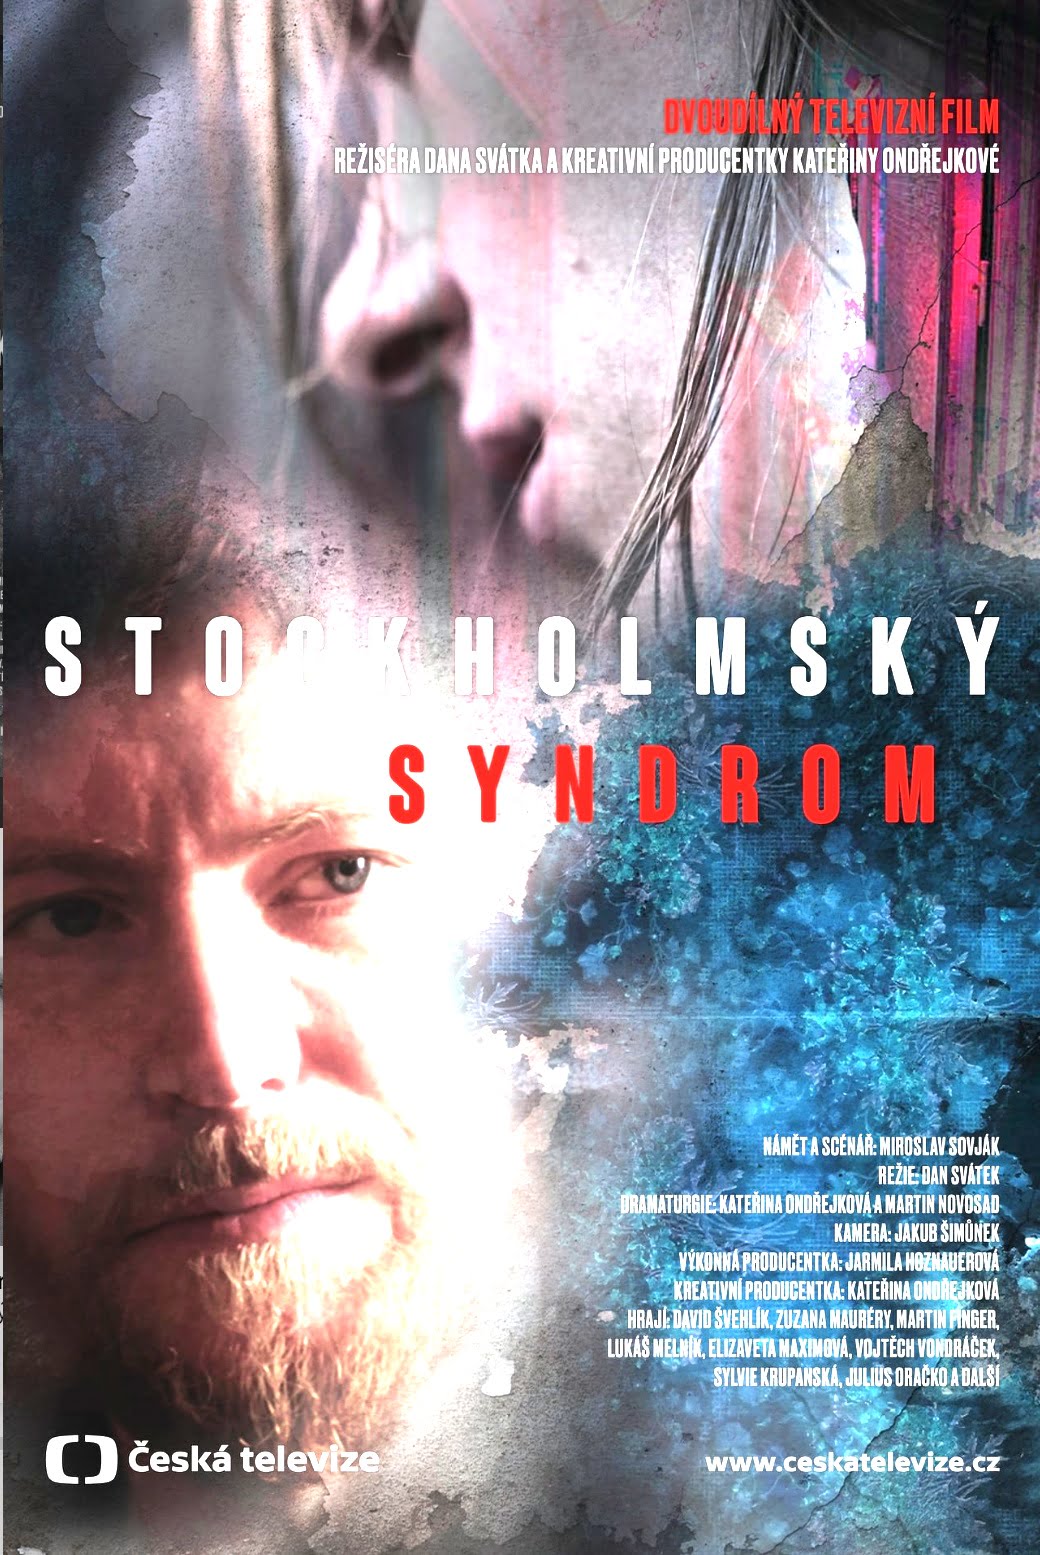 Plakát pro film “Stockholmský syndrom”